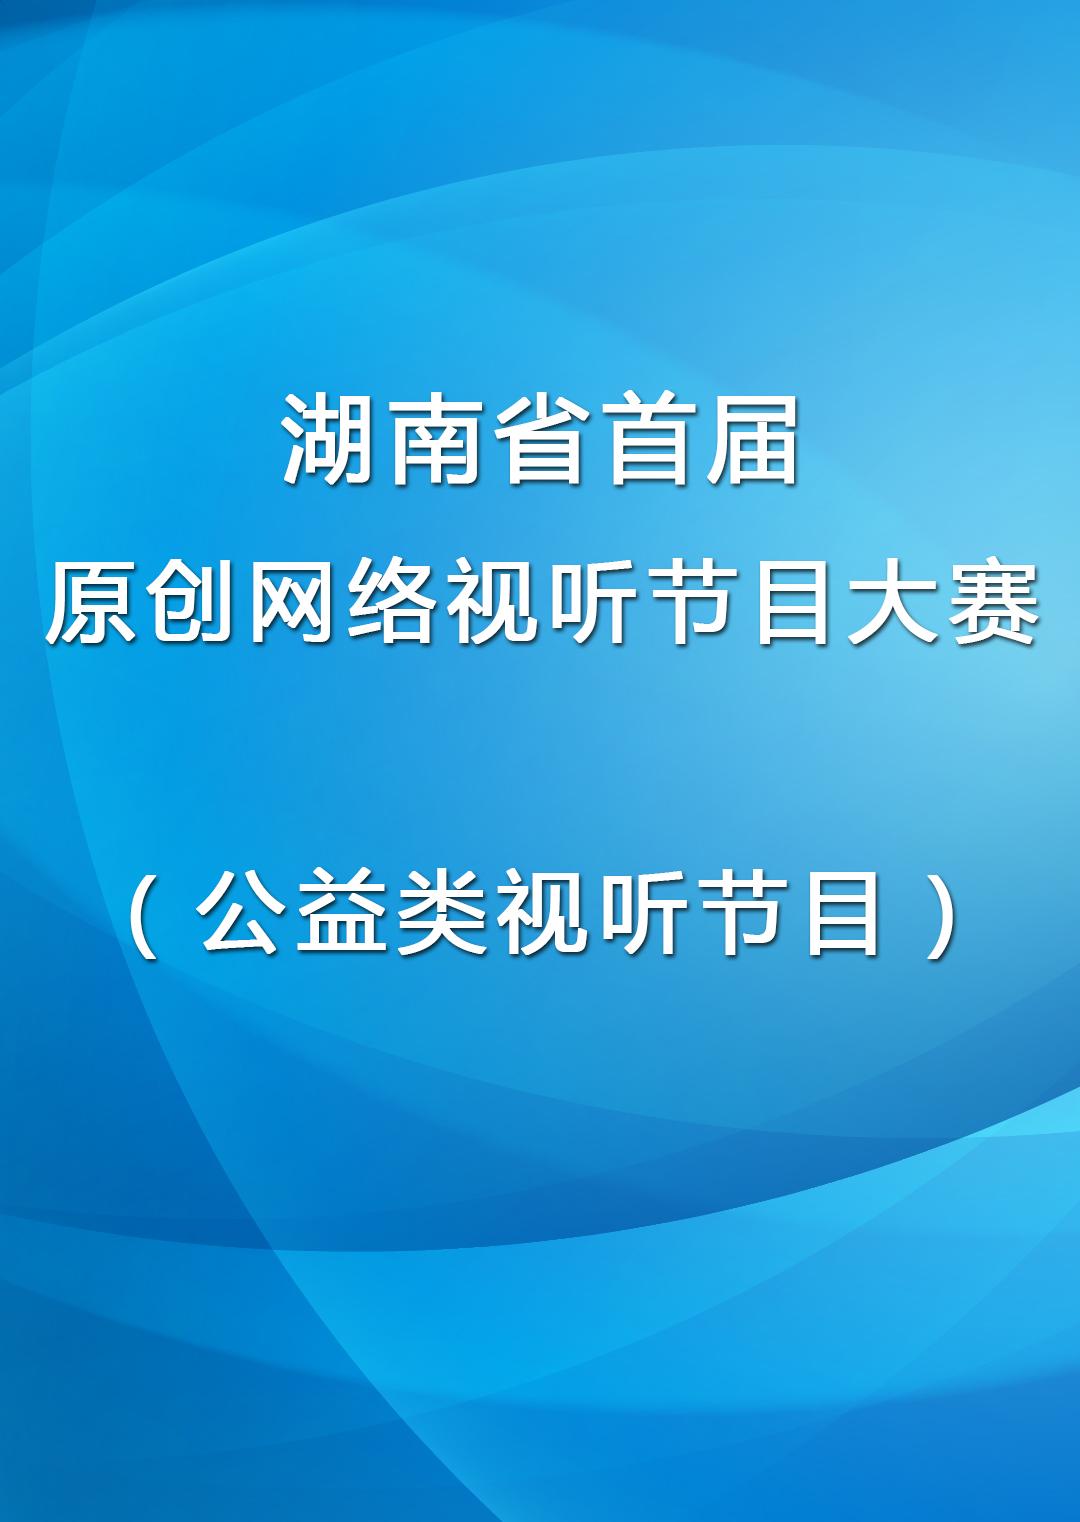 湖南省首届原创网络视听节目大赛公益类视听节目